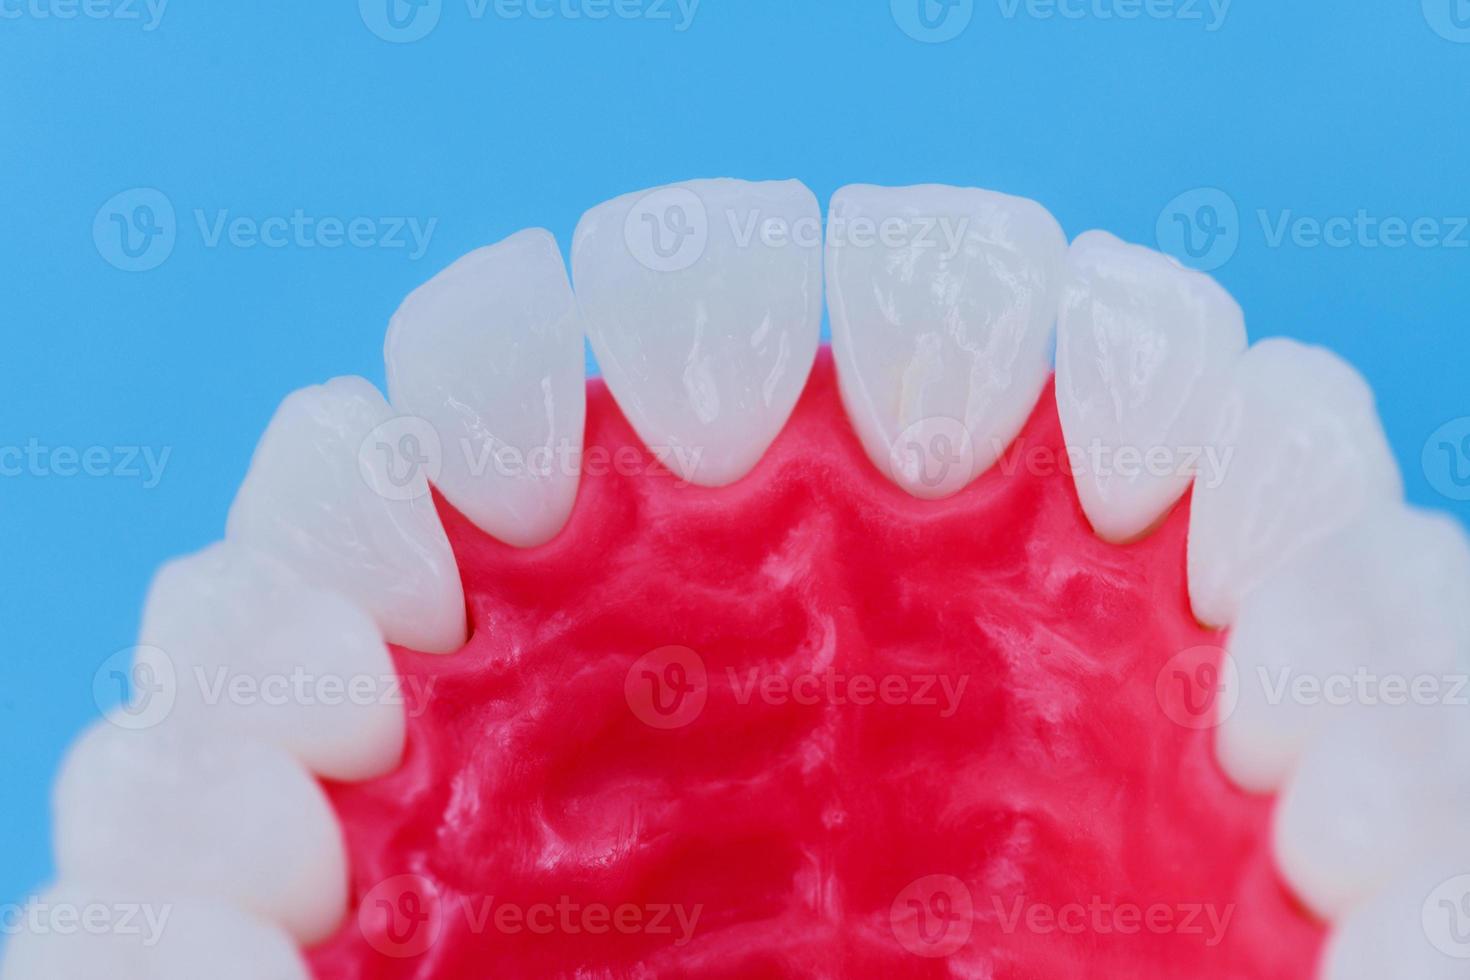 mandíbula superior humana con modelo de anatomía de dientes y encías foto